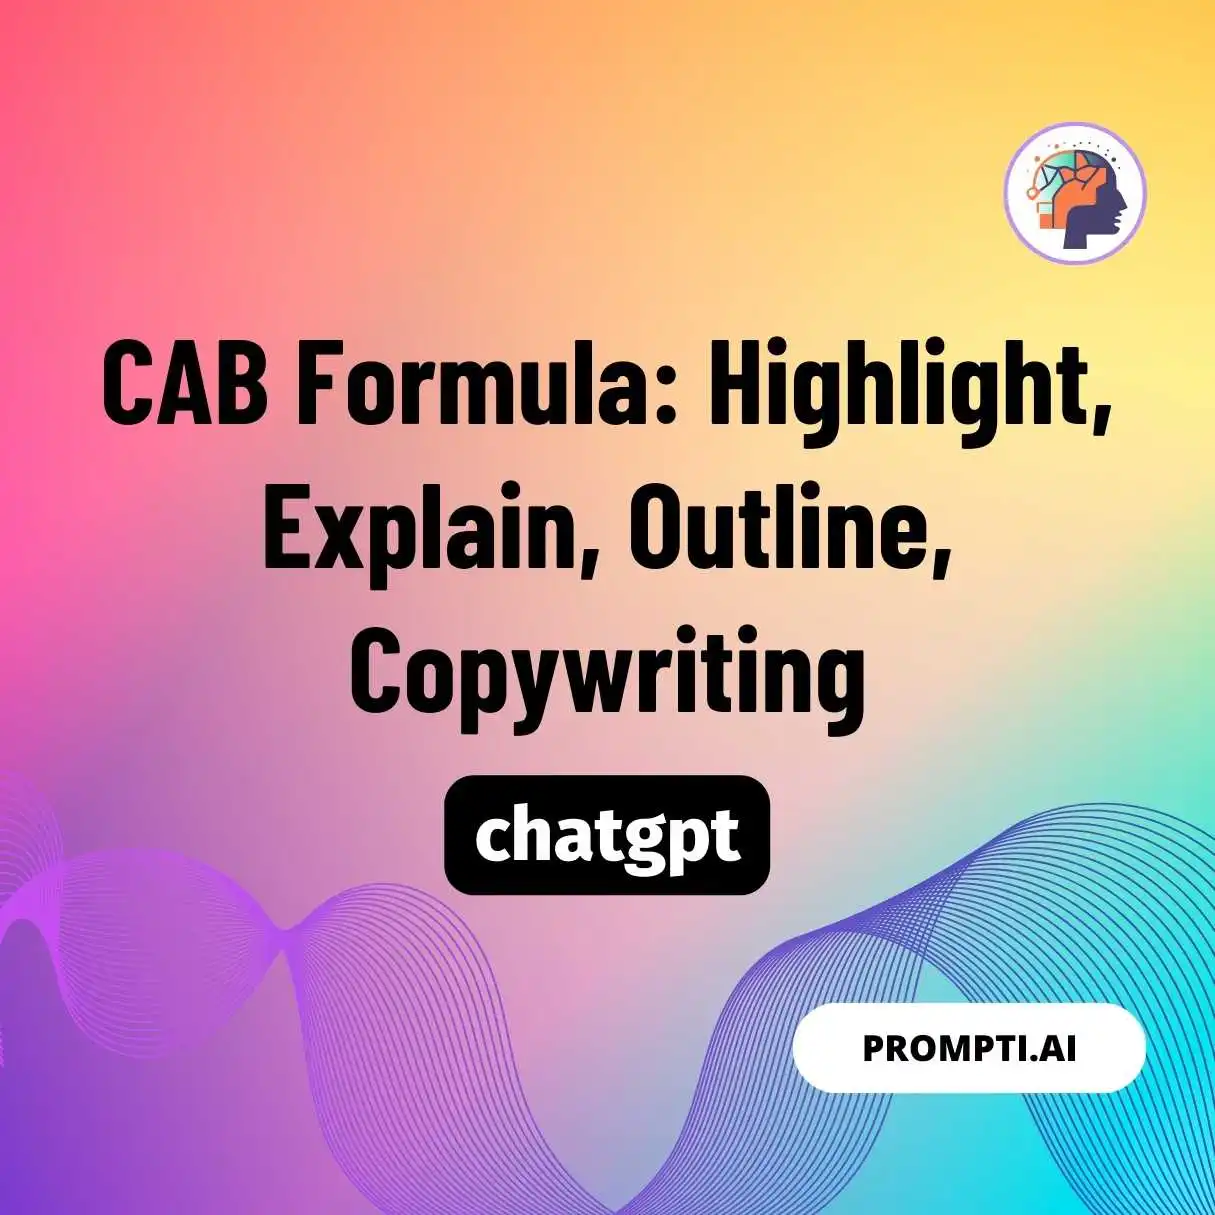 CAB Formula: Highlight, Explain, Outline, Copywriting